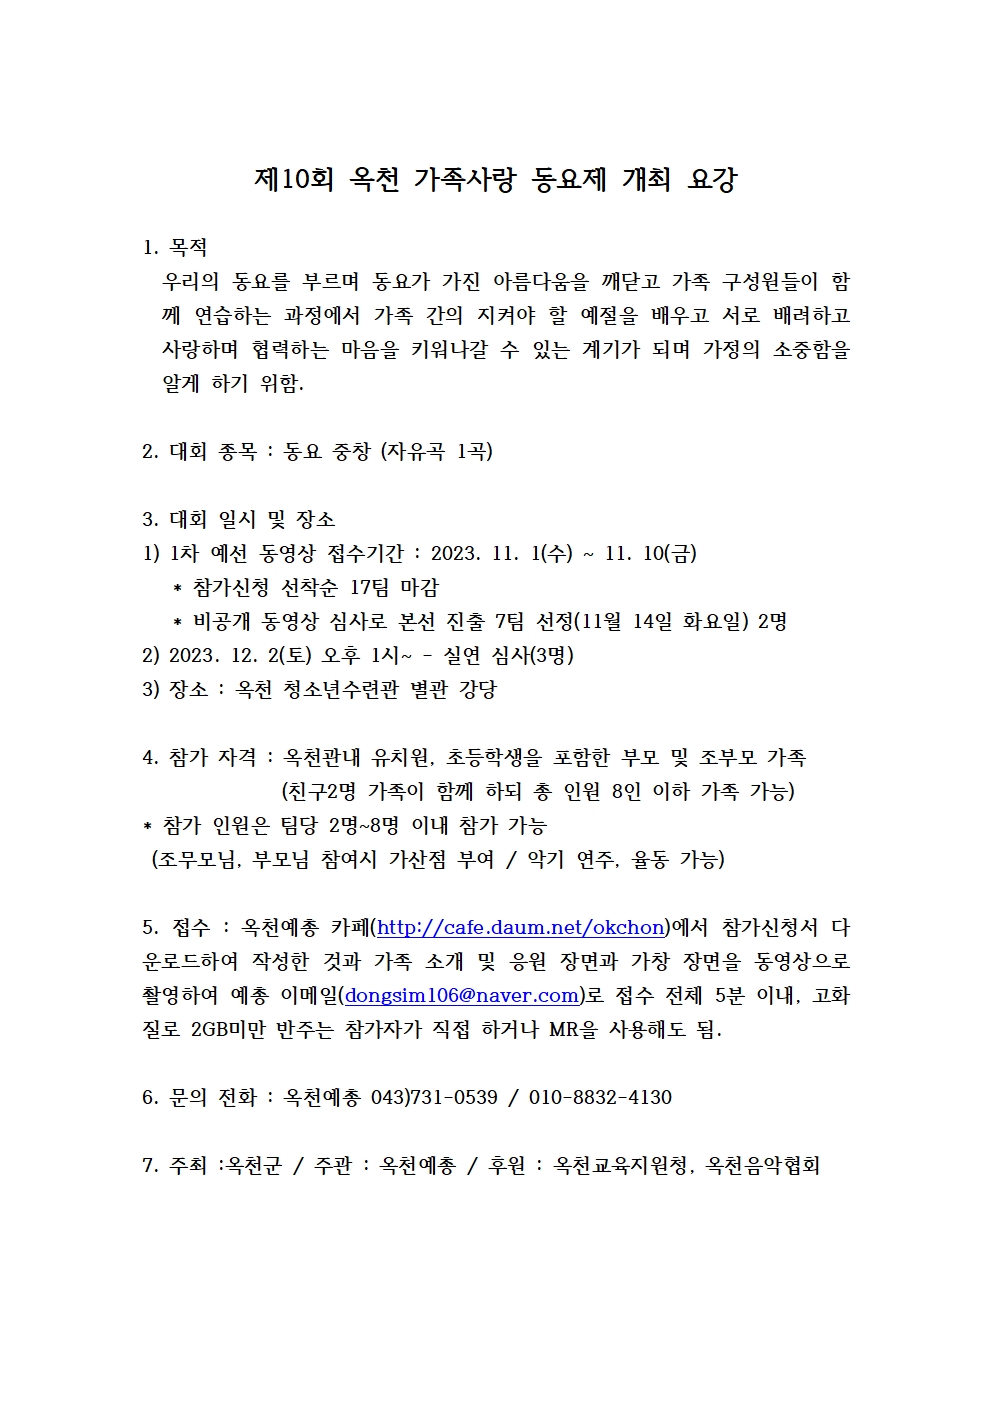 충청북도옥천교육지원청 교육과_제10회 옥천 가족사랑 동요제 개최 요강001